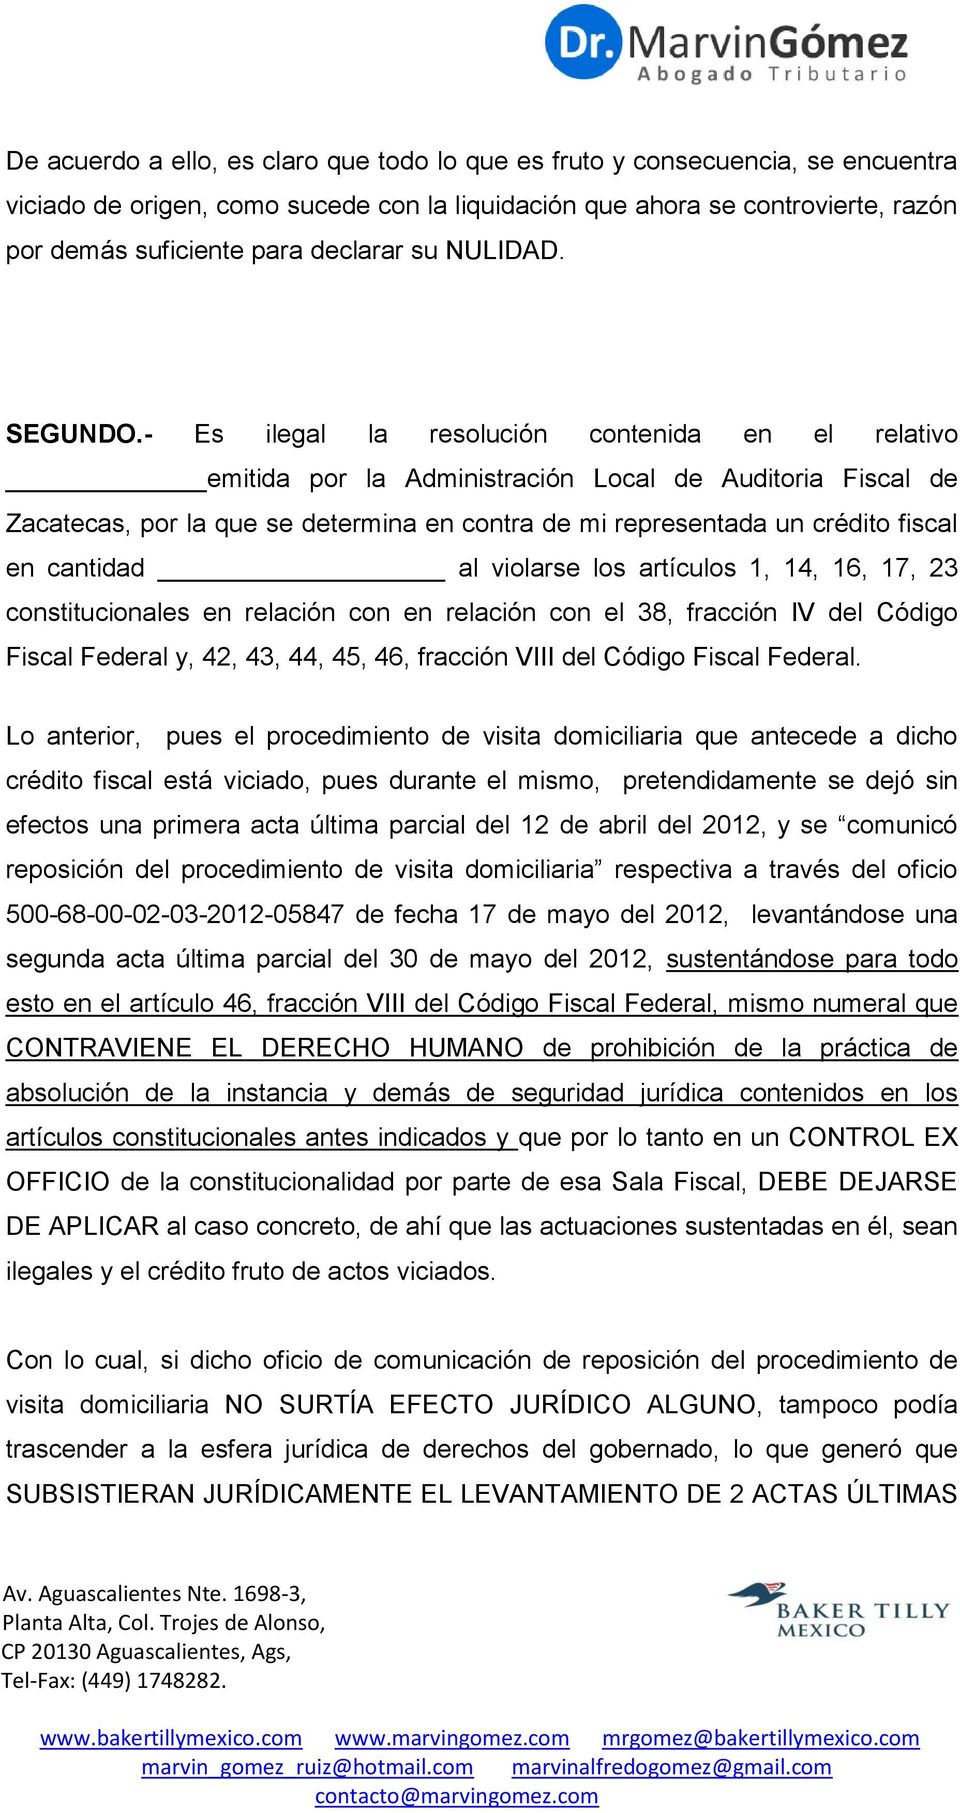 - Es ilegal la resolución contenida en el relativo emitida por la Administración Local de Auditoria Fiscal de Zacatecas, por la que se determina en contra de mi representada un crédito fiscal en